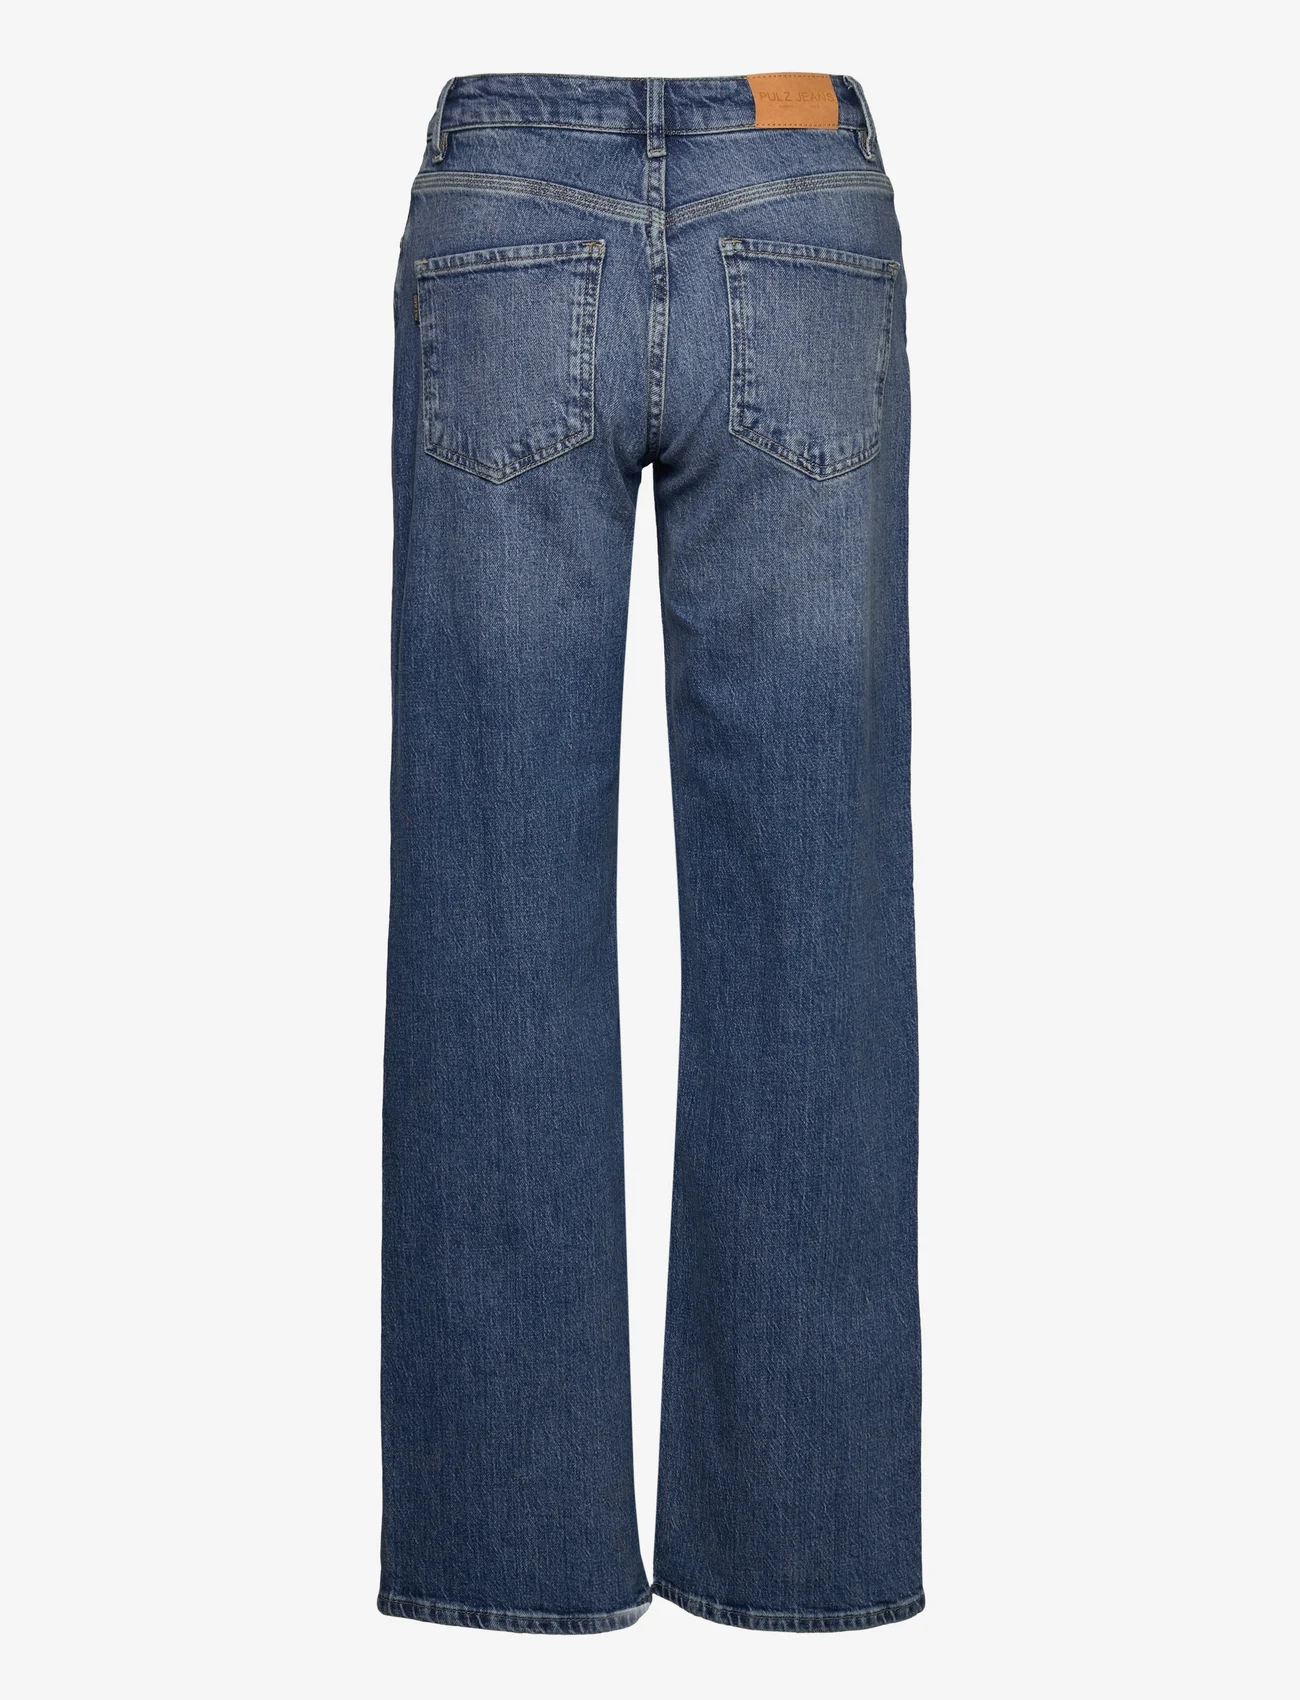 Pulz Jeans - PZVEGA HW Jeans Wide Leg - laia säärega teksad - medium blue denim - 1